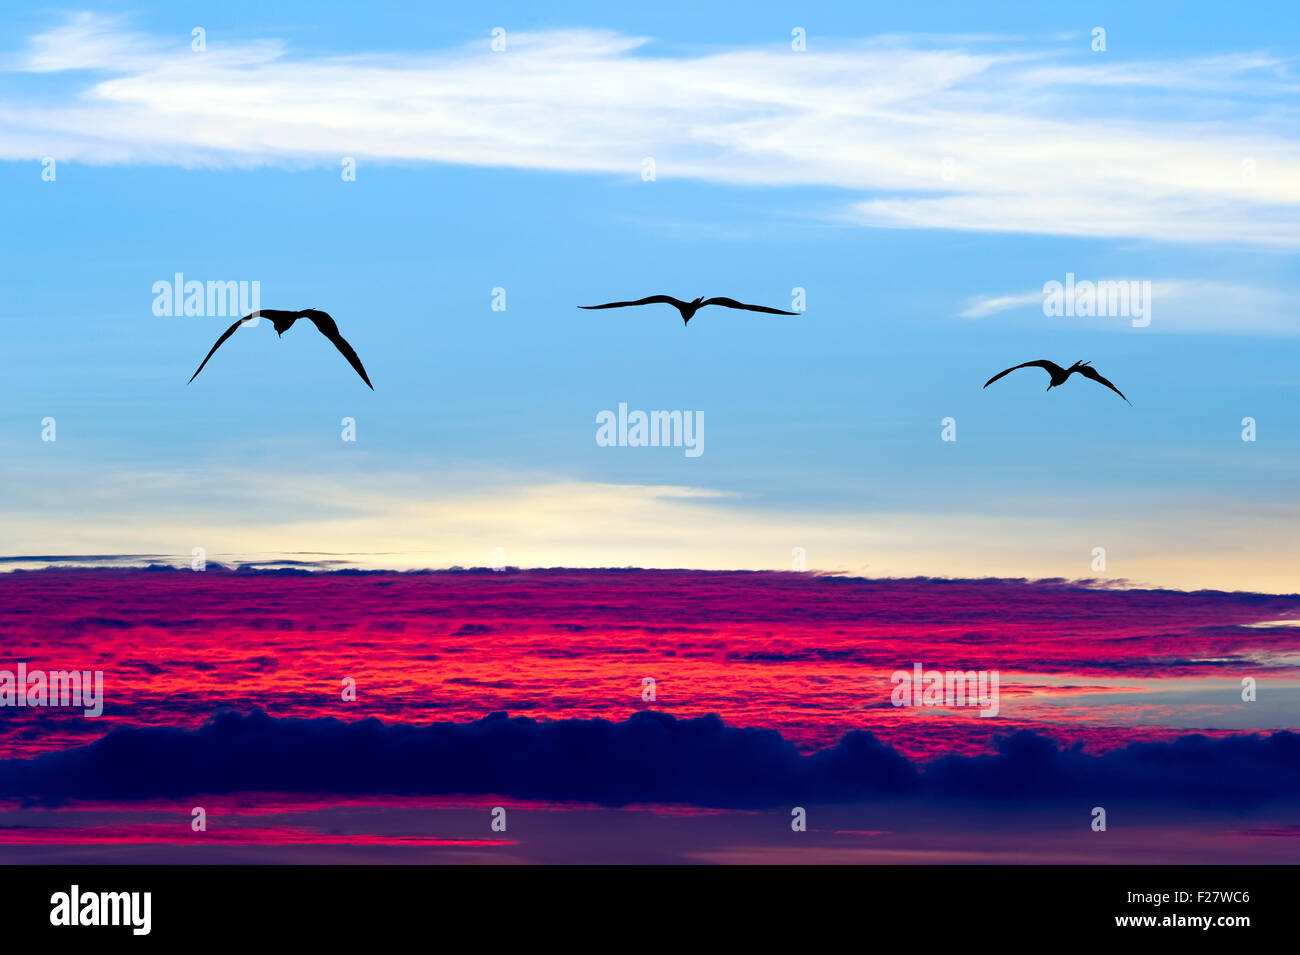 Silhouette oiseaux battant est trois oiseaux de haut vol au-dessus des nuages de la capture d'un sentiment d'ouverture et de liberté. Banque D'Images